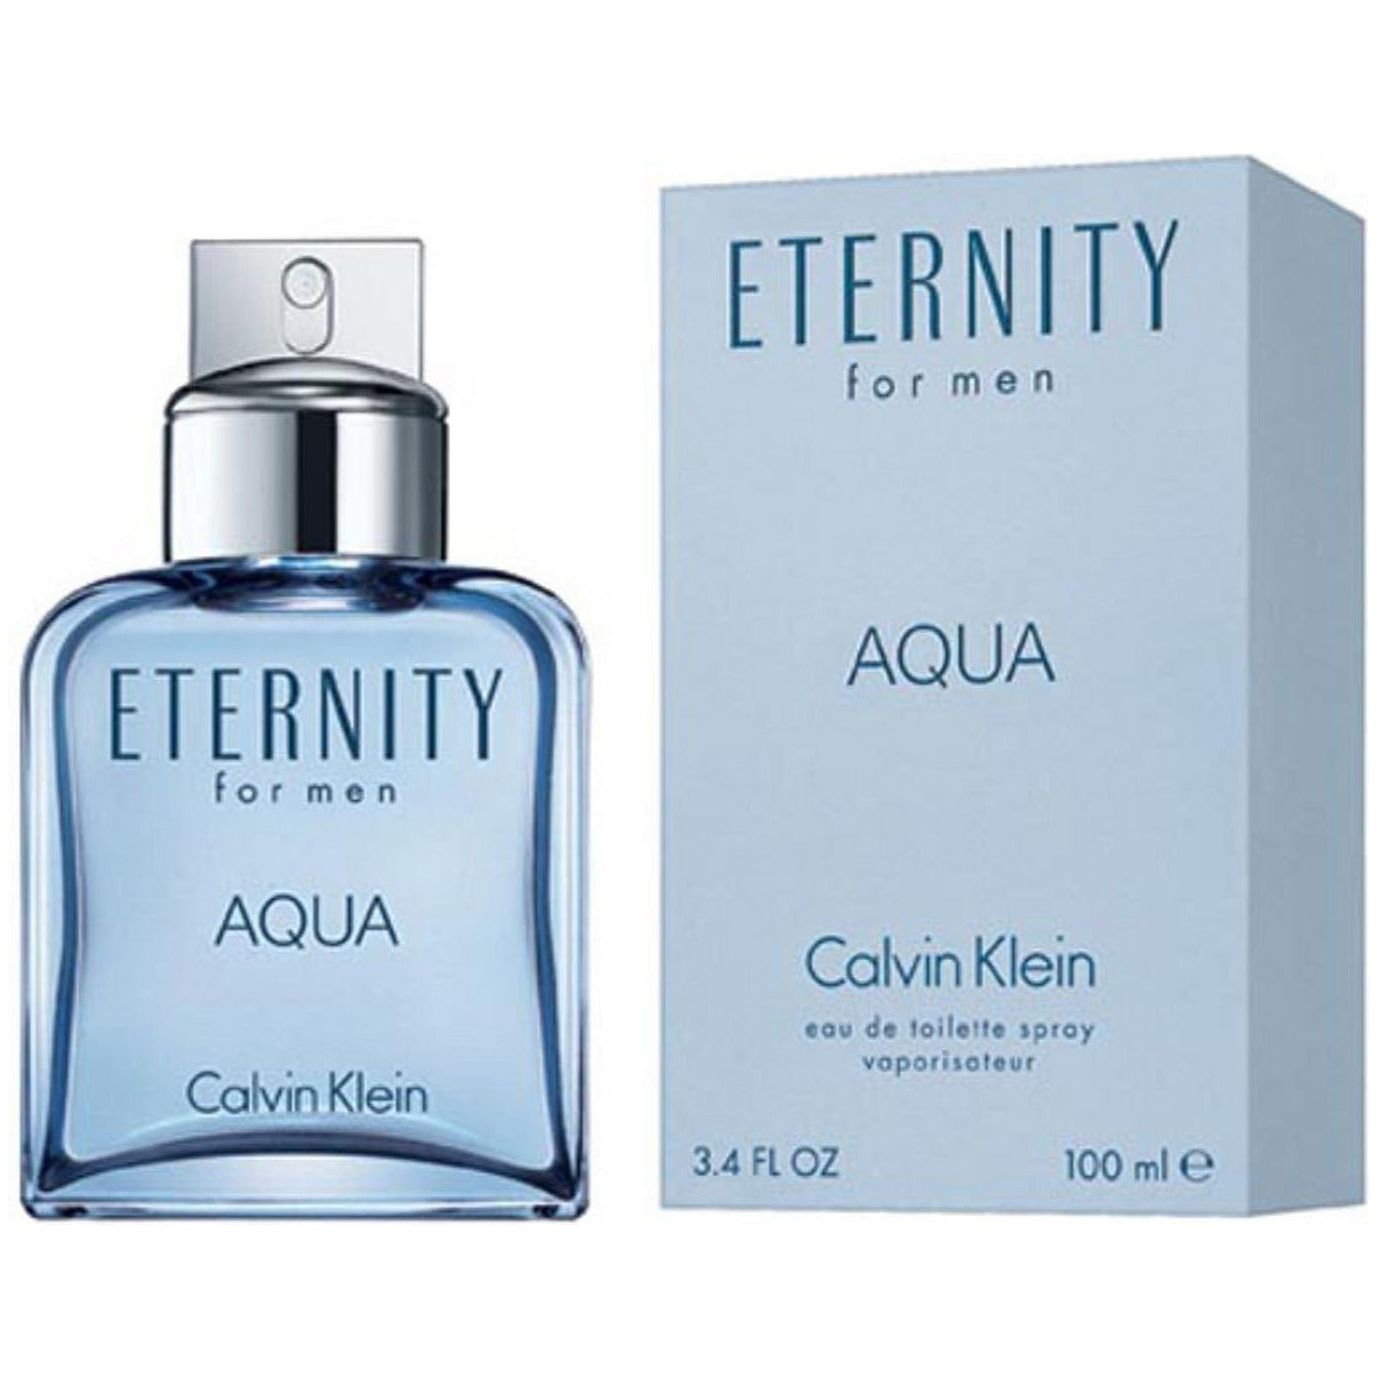 calvin klein eternity aqua 3.4 oz